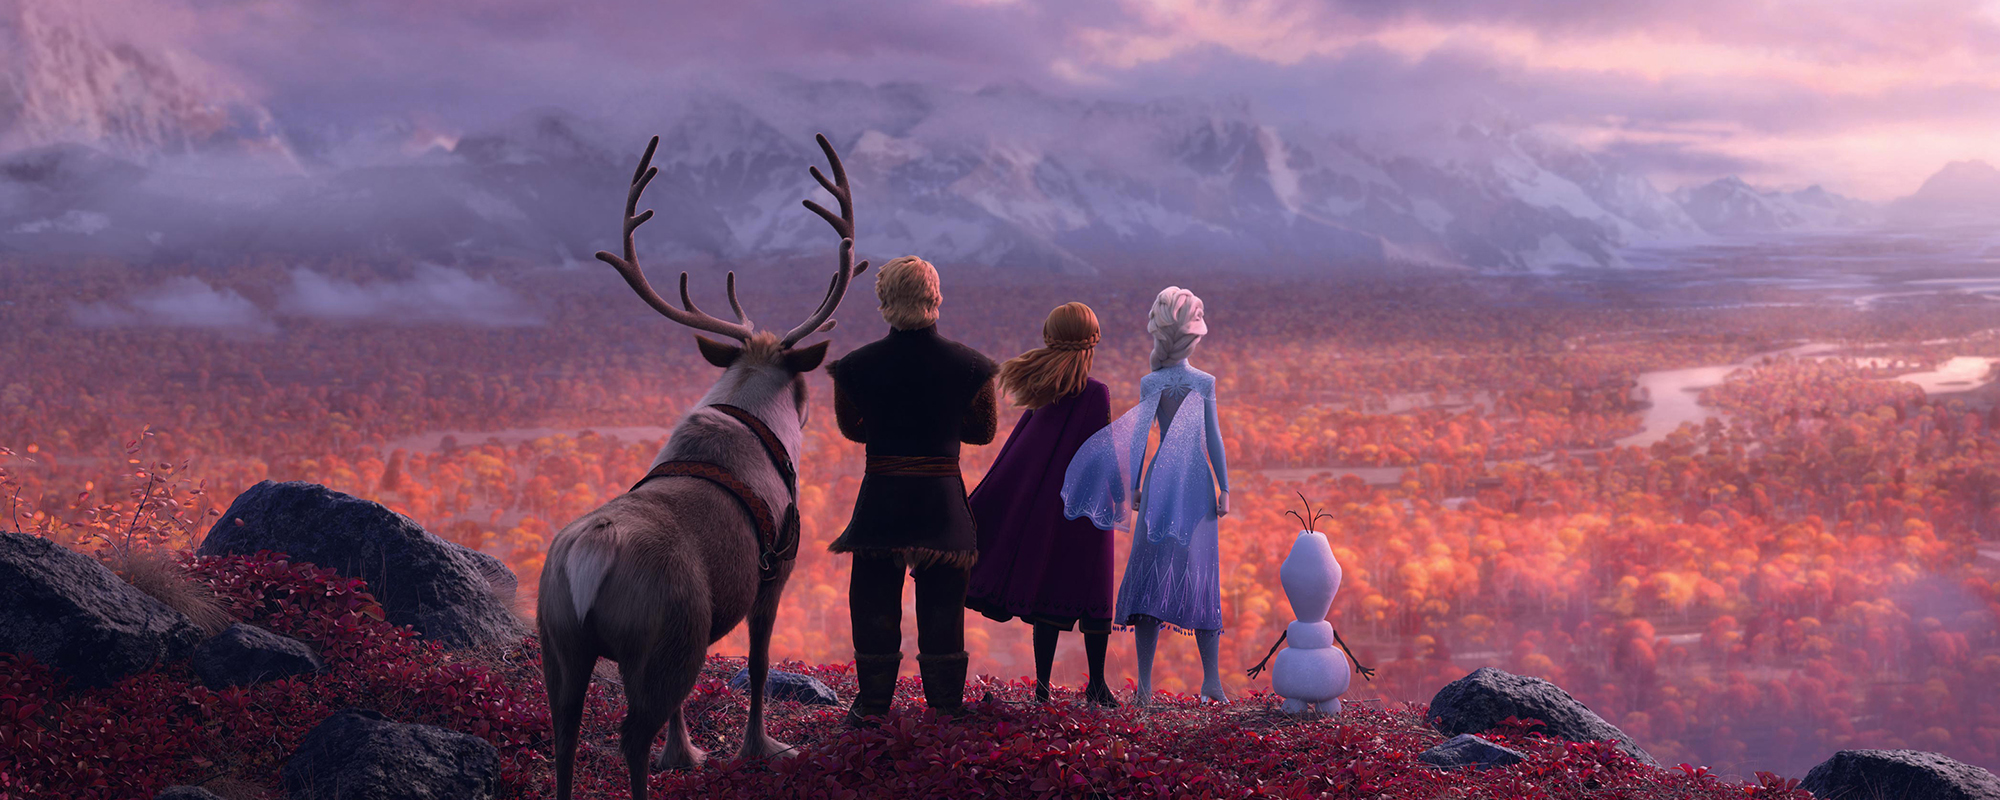 Frozen 2 Sing-Along - One Cineplex & Aman Hills Cineplex